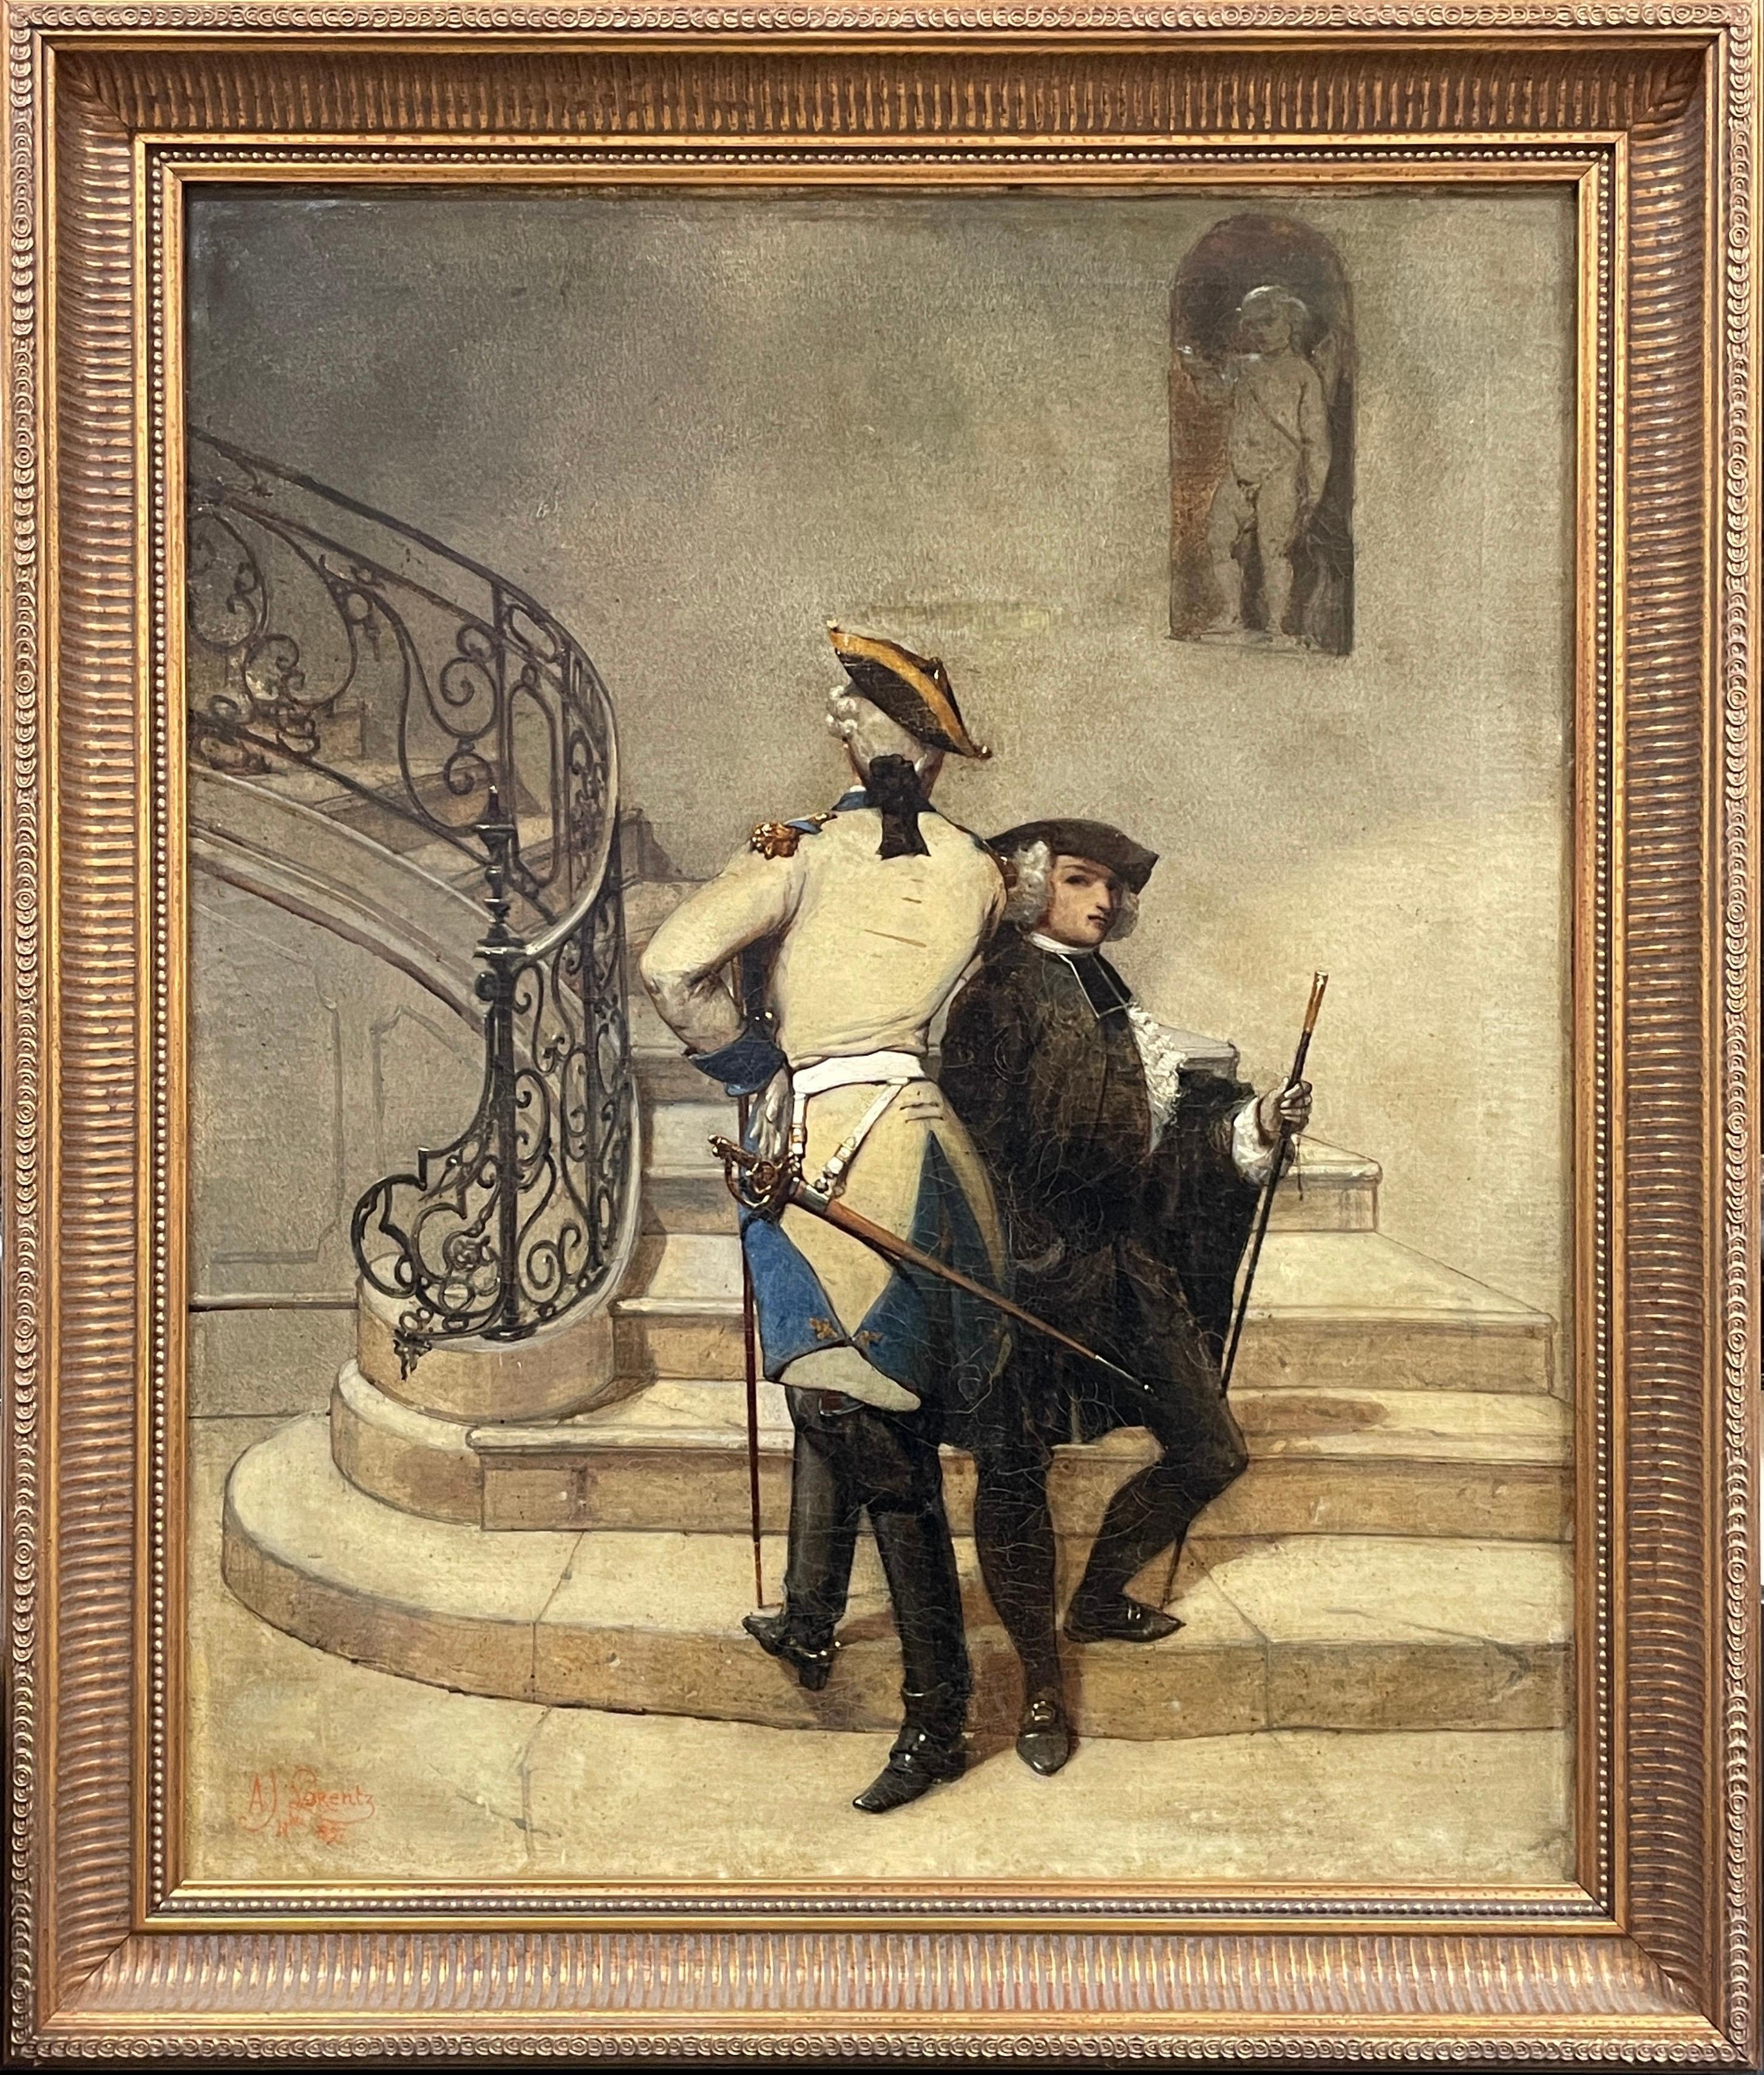 Le Duel
par Alcide Joseph LORENTZ (français 1813-1891)
signé et daté de 1857
peinture à l'huile sur toile, encadrée
taille encadrée : 30 x 25 pouces
état : très bon et présentable, réparations antérieures visibles au revers. 
provenance :